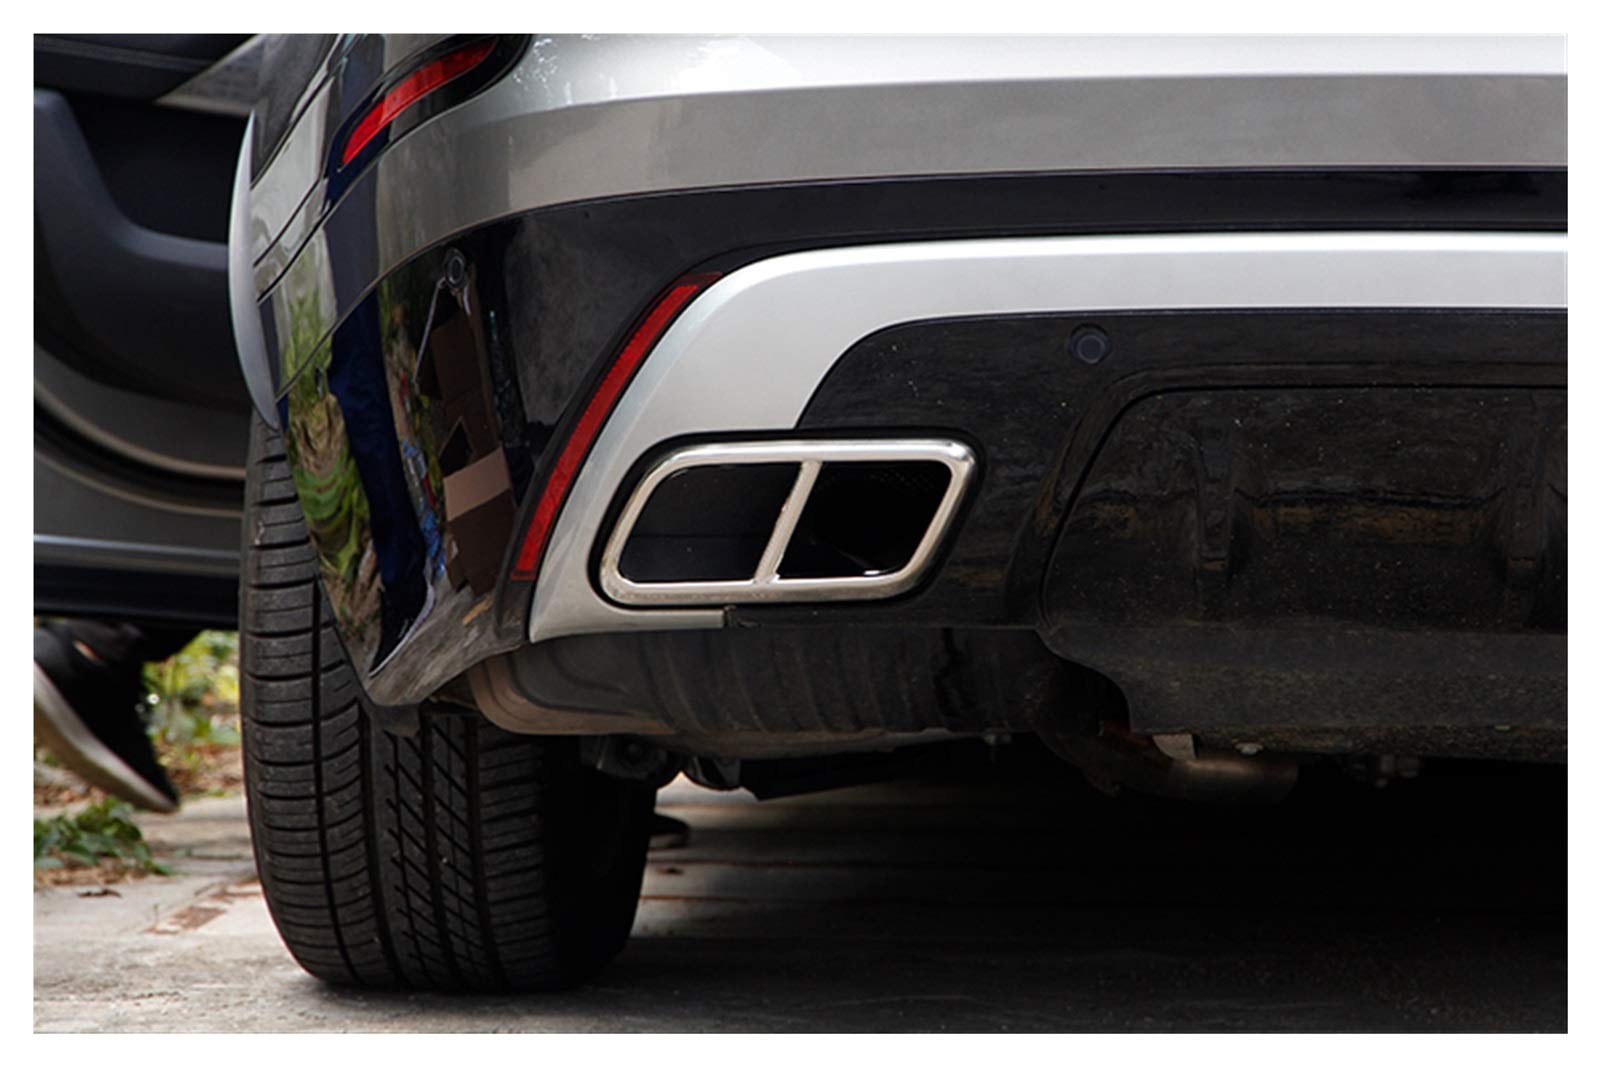 MYDH Auspuffblenden Für Land Rover Range Rover Velar 2017-2020 Auto-Rohrhals-Abgasausgänge Tailrop-Rahmenabdeckung Auspuff Endrohr (Farbe : Weiß) von MYDH